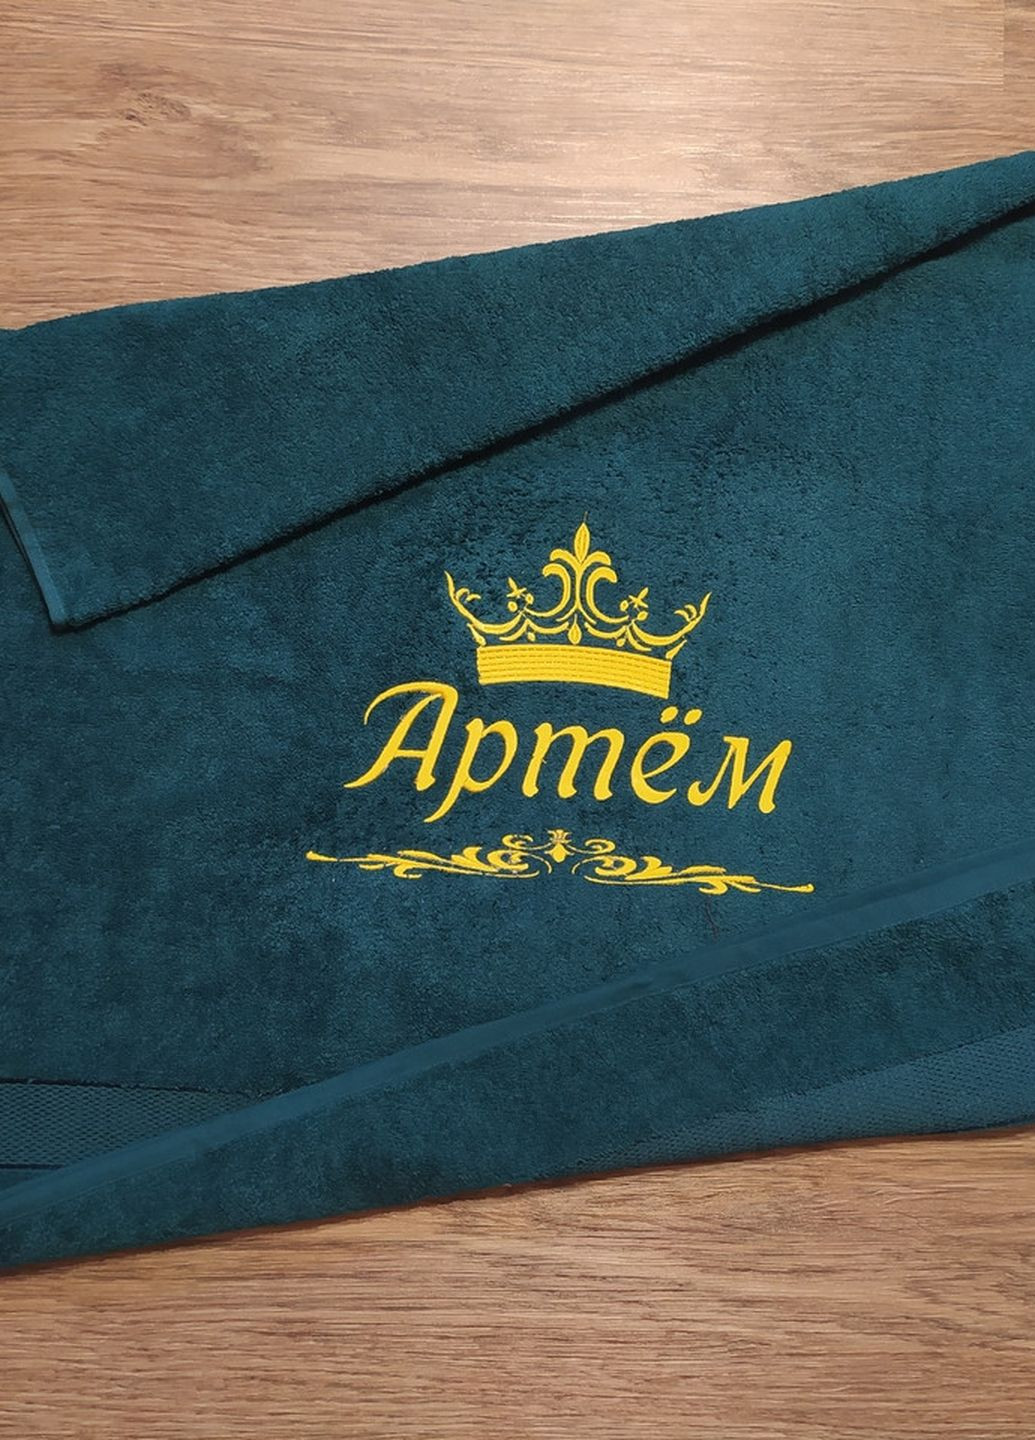 No Brand полотенце с именной вышивкой махровое банное 70*140 зеленый артем 03920 однотонный зеленый производство - Украина